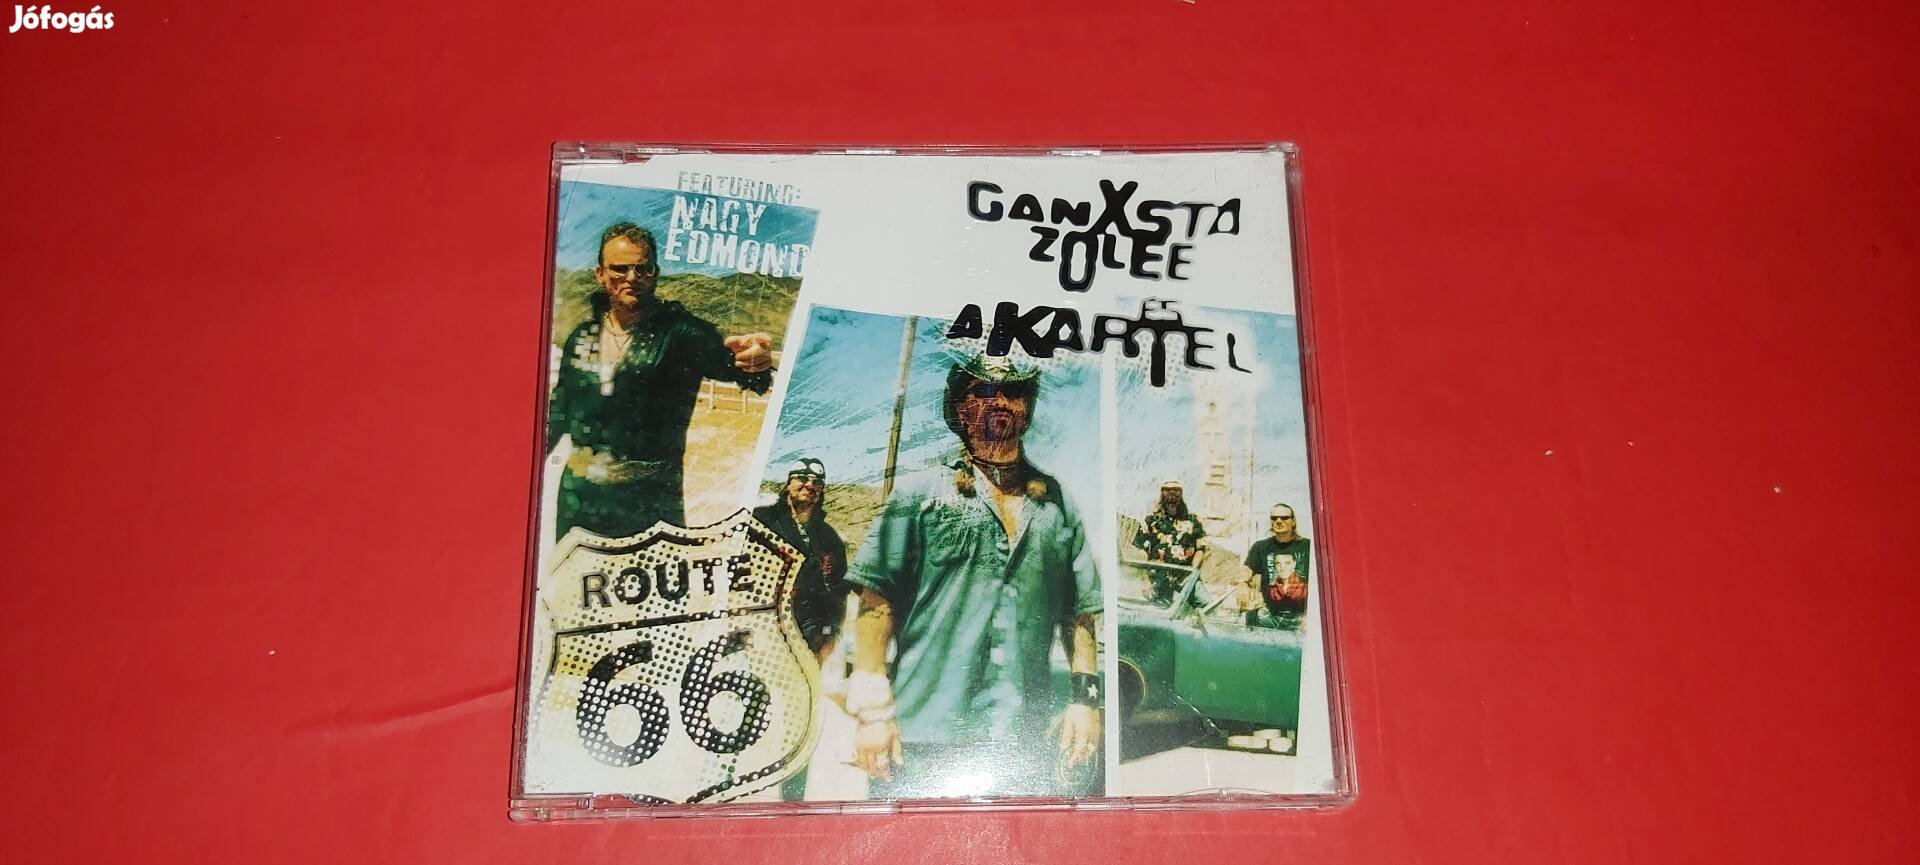 Ganxsta Zolee és a Kartel Route 66 maxi Cd 2004